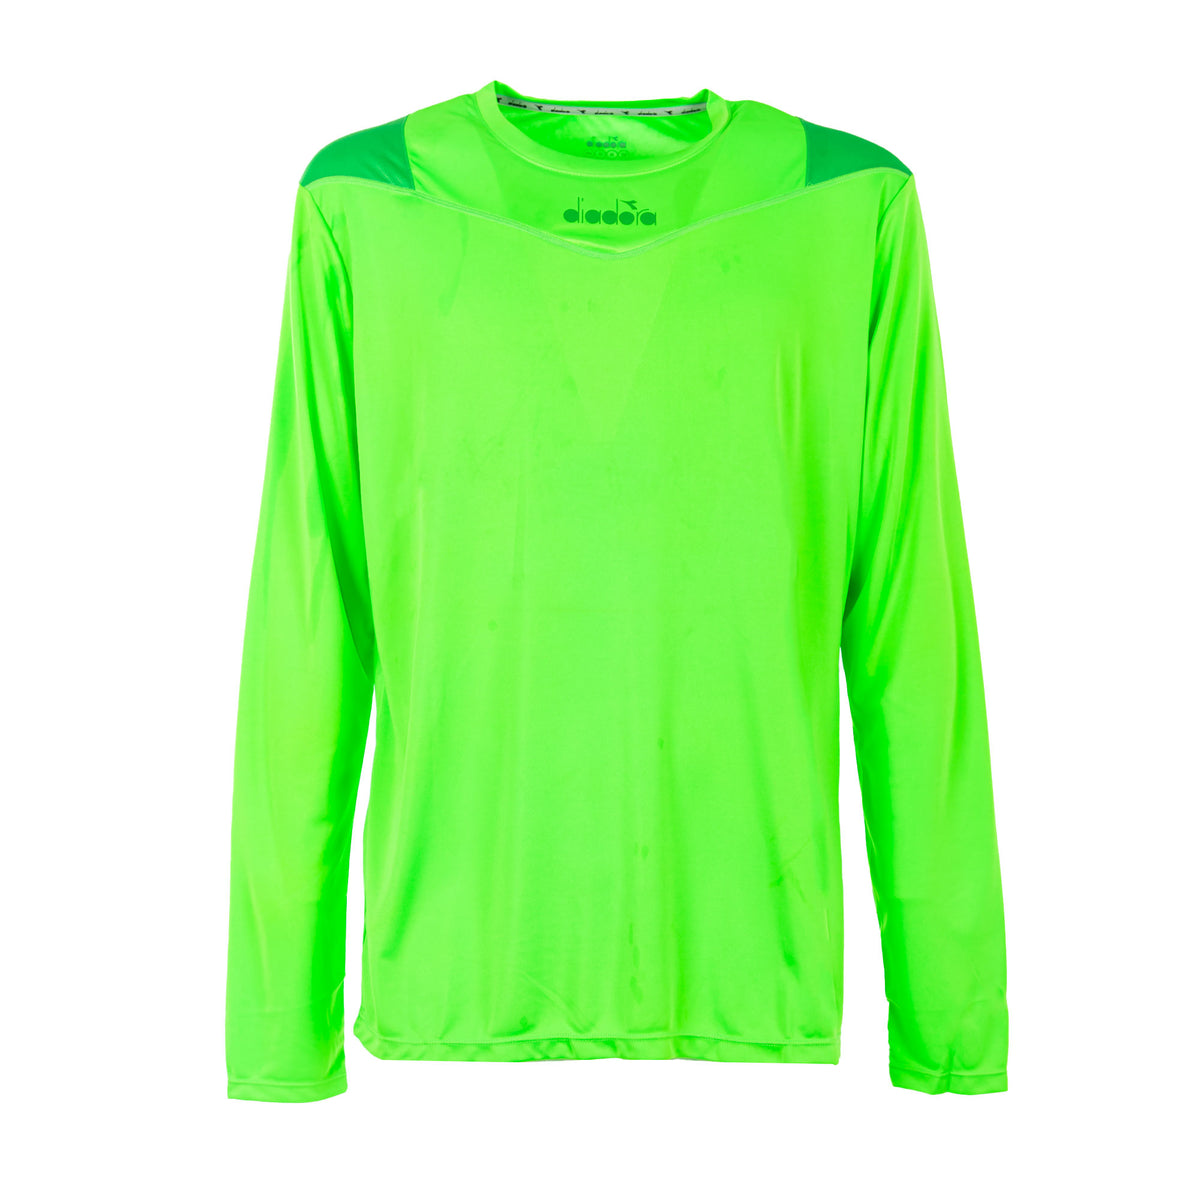 DIADORA | T-Shirt Sportiva manica lunga green fluo special Uomo | 102.172845.01